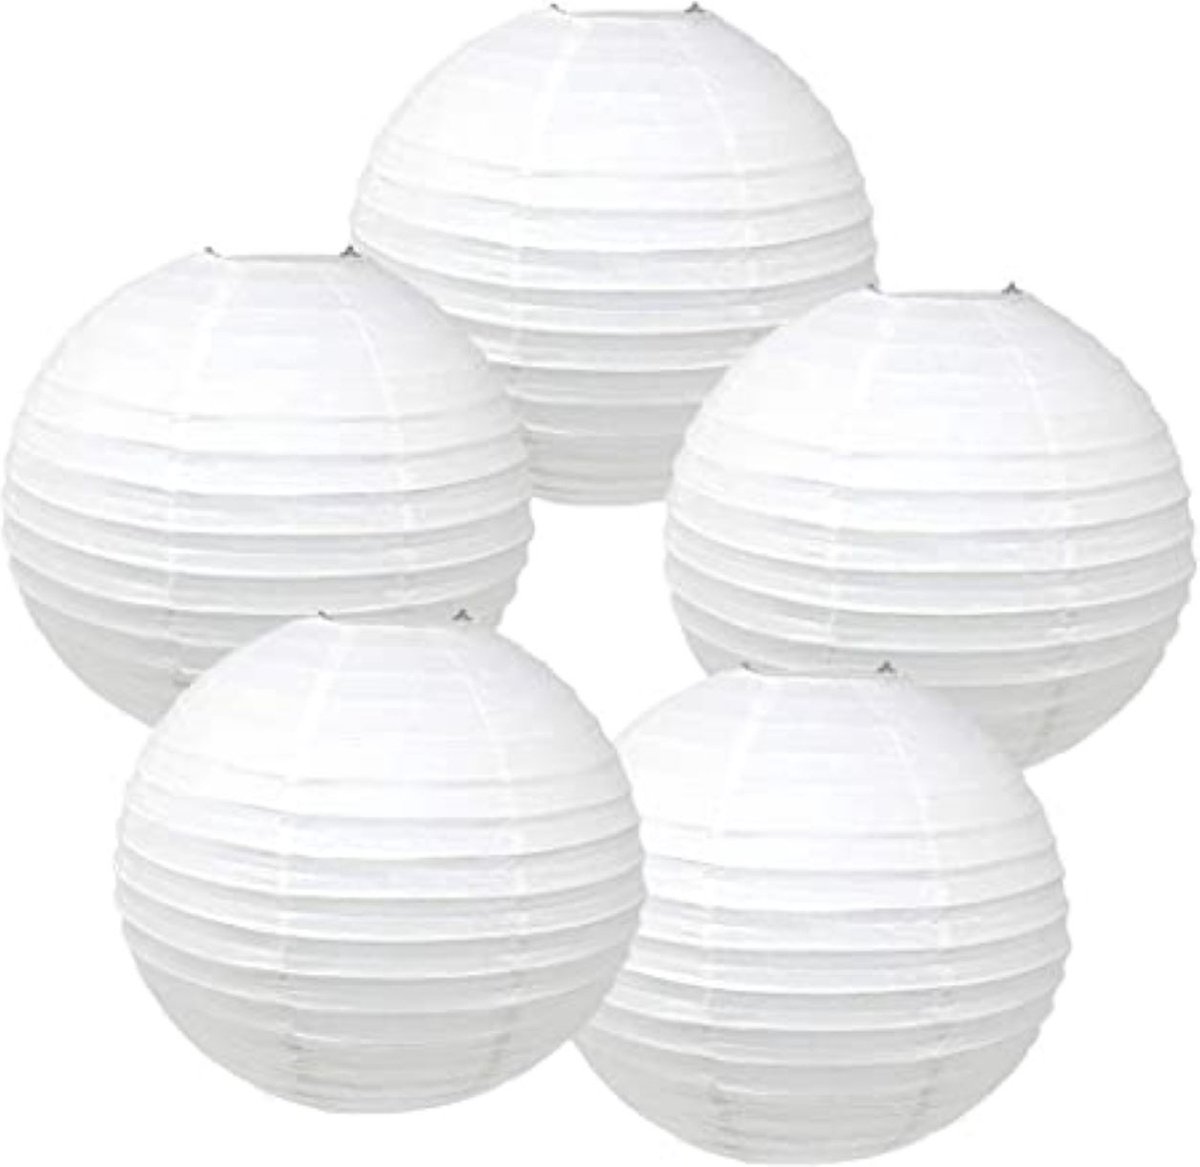 5X Lampion wit met een doorsnede van 25 cm met LED lampjes - lampion - wit - LED - lamp - decoratie - kerst - huwelijk